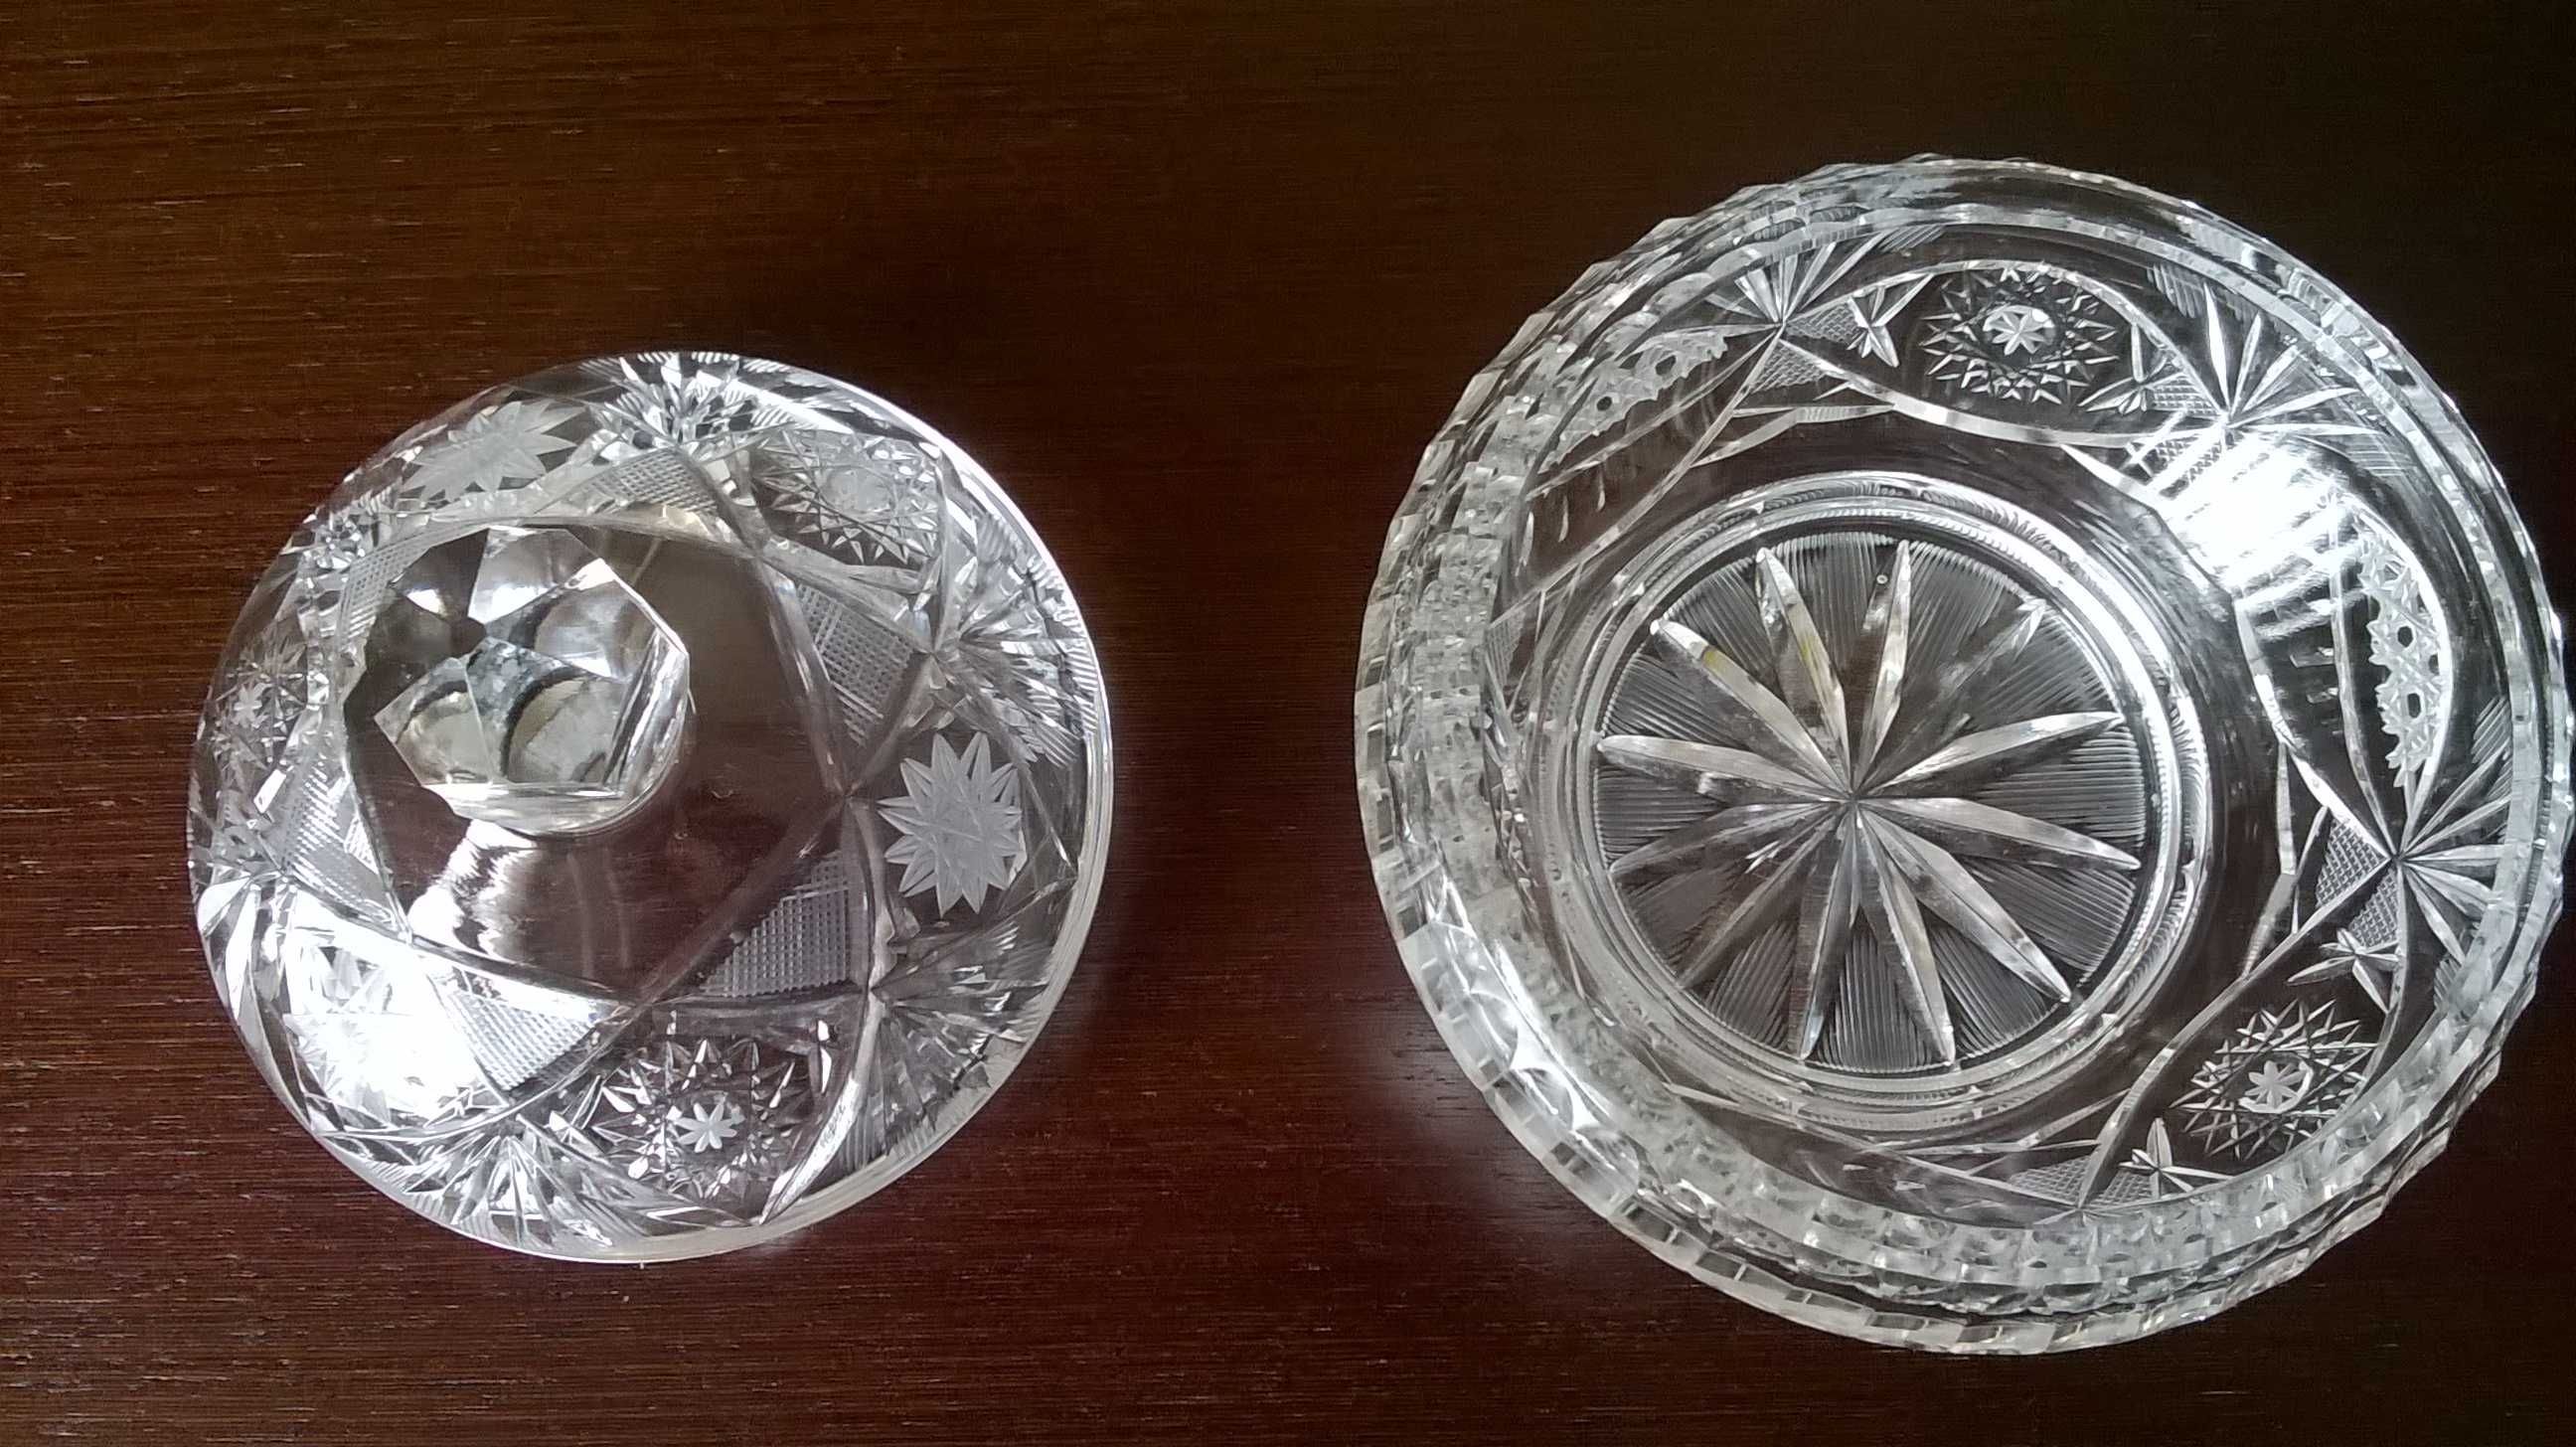 Kryształ-cukiernica ze szkła kryształowego